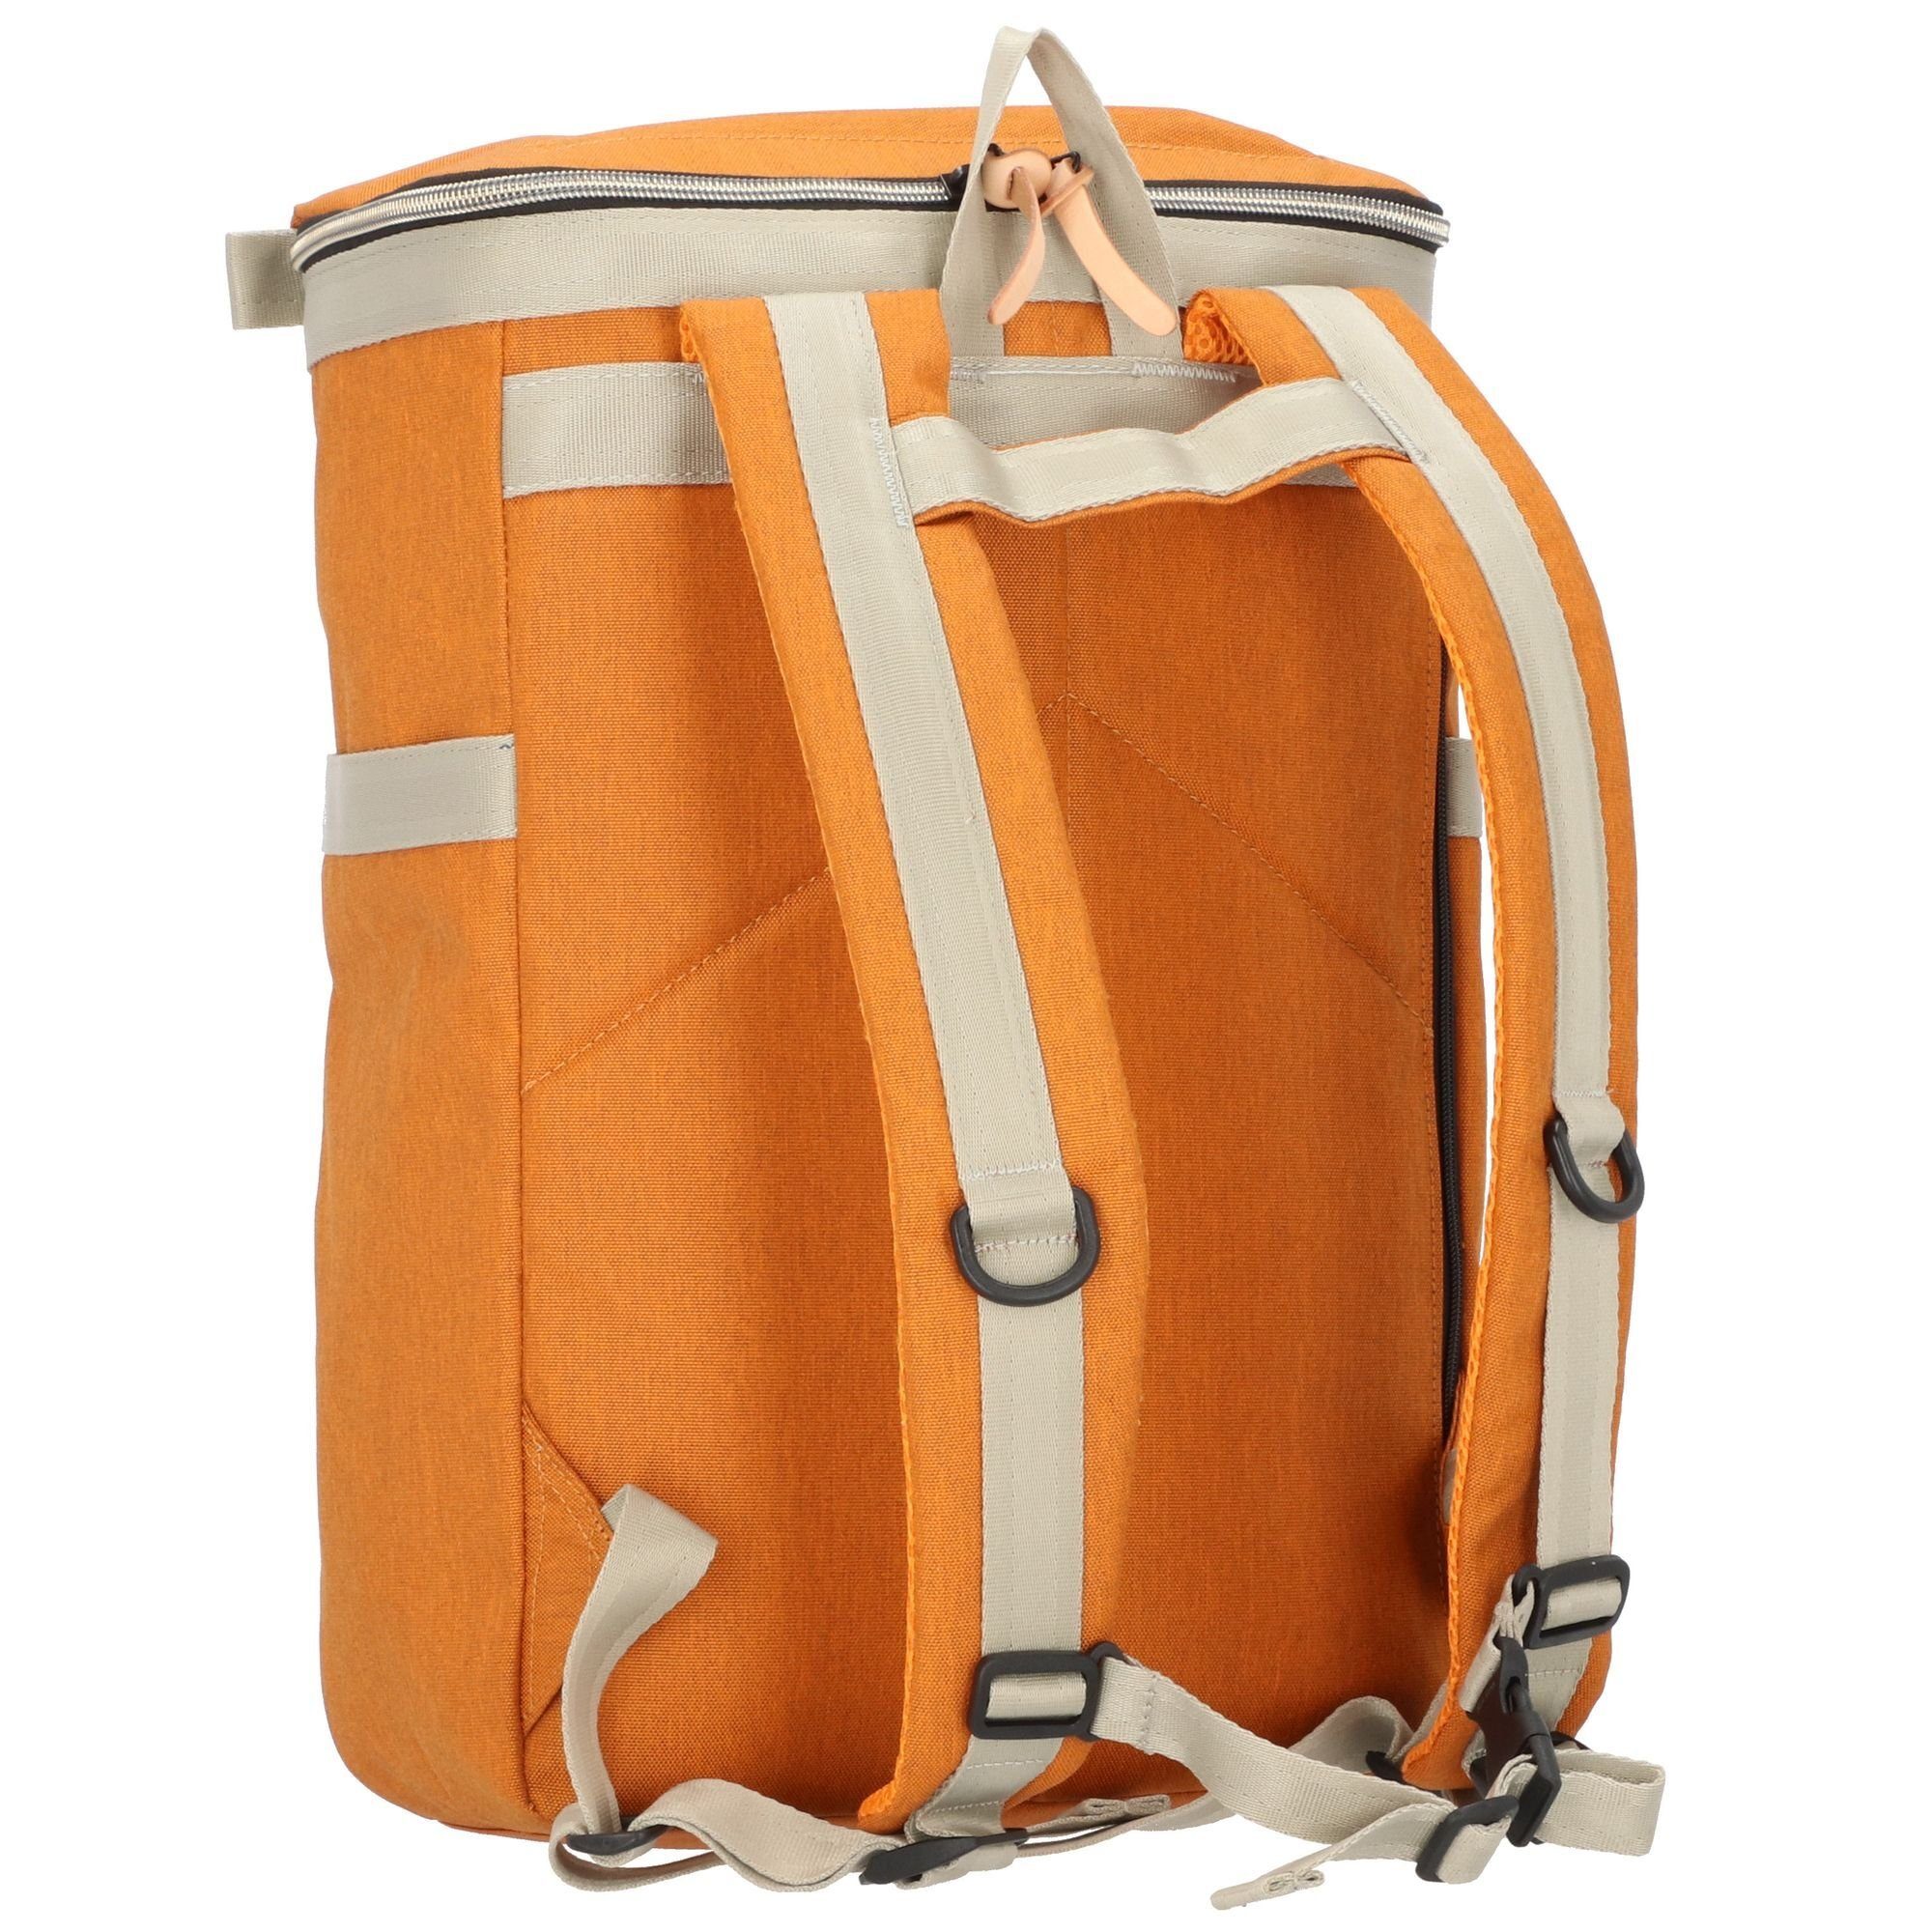 Harvest Label Daypack, Polyester orange